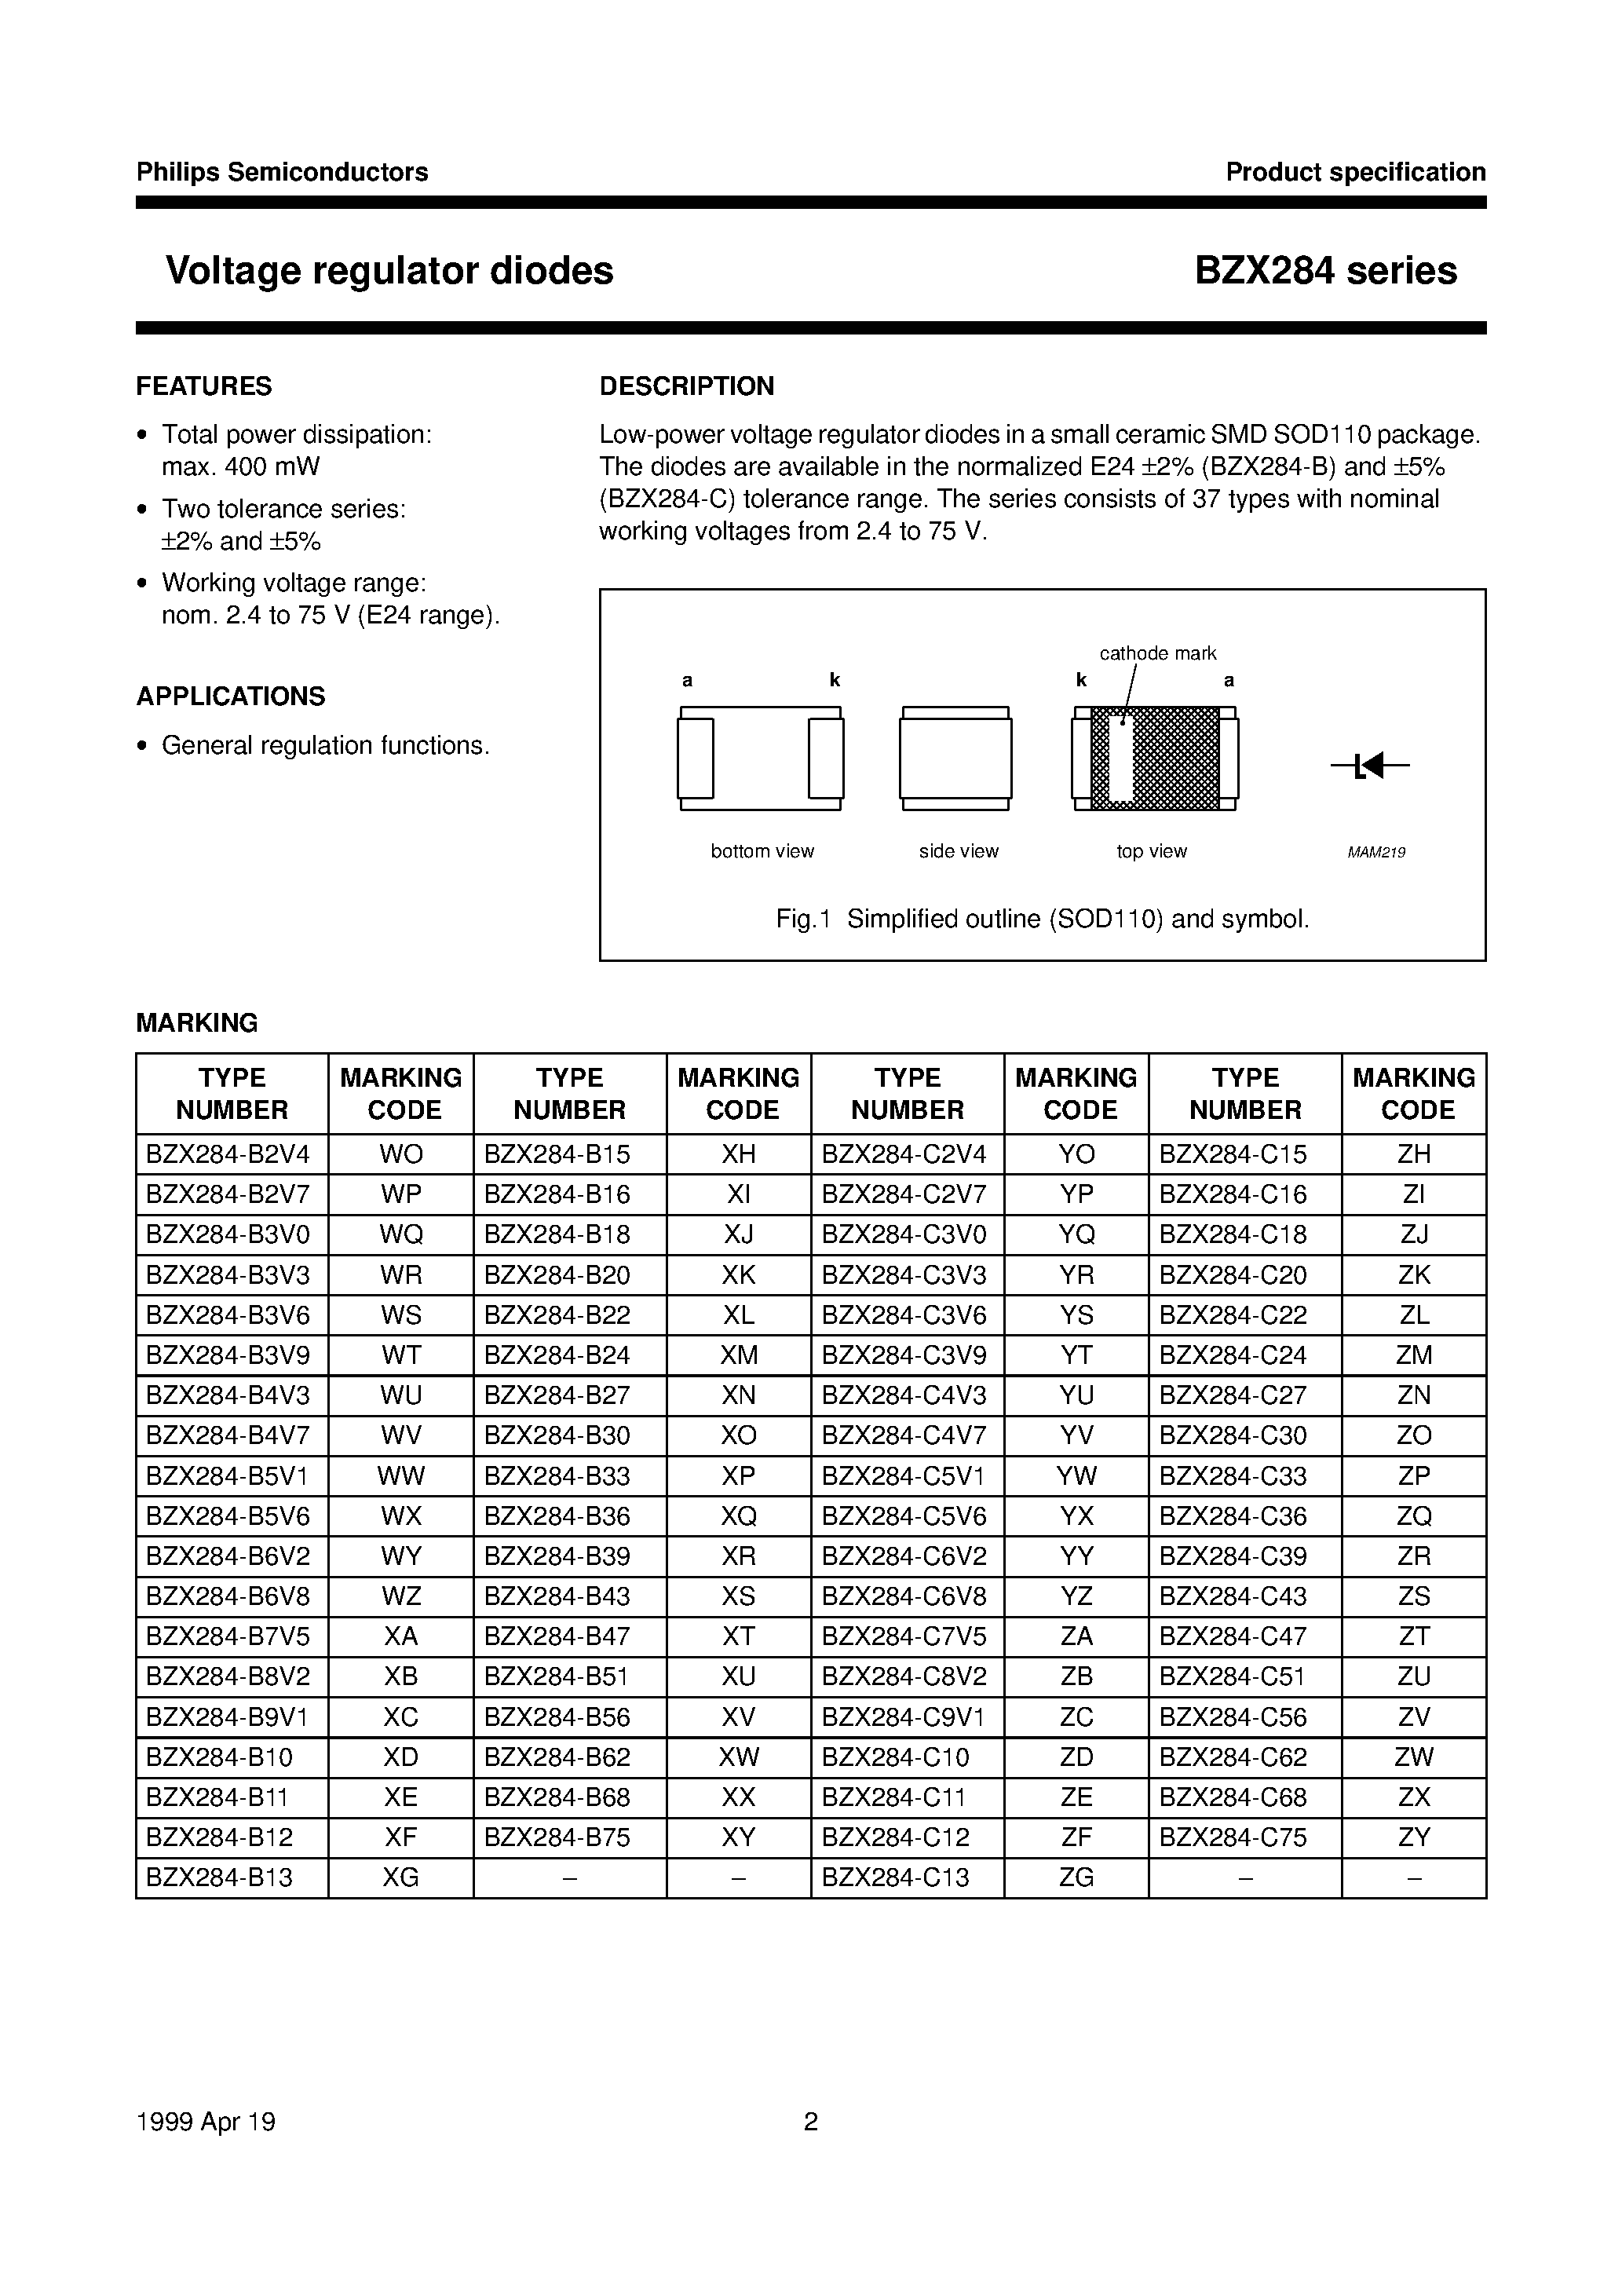 Datasheet BZX284-B24 - Voltage regulator diodes page 2